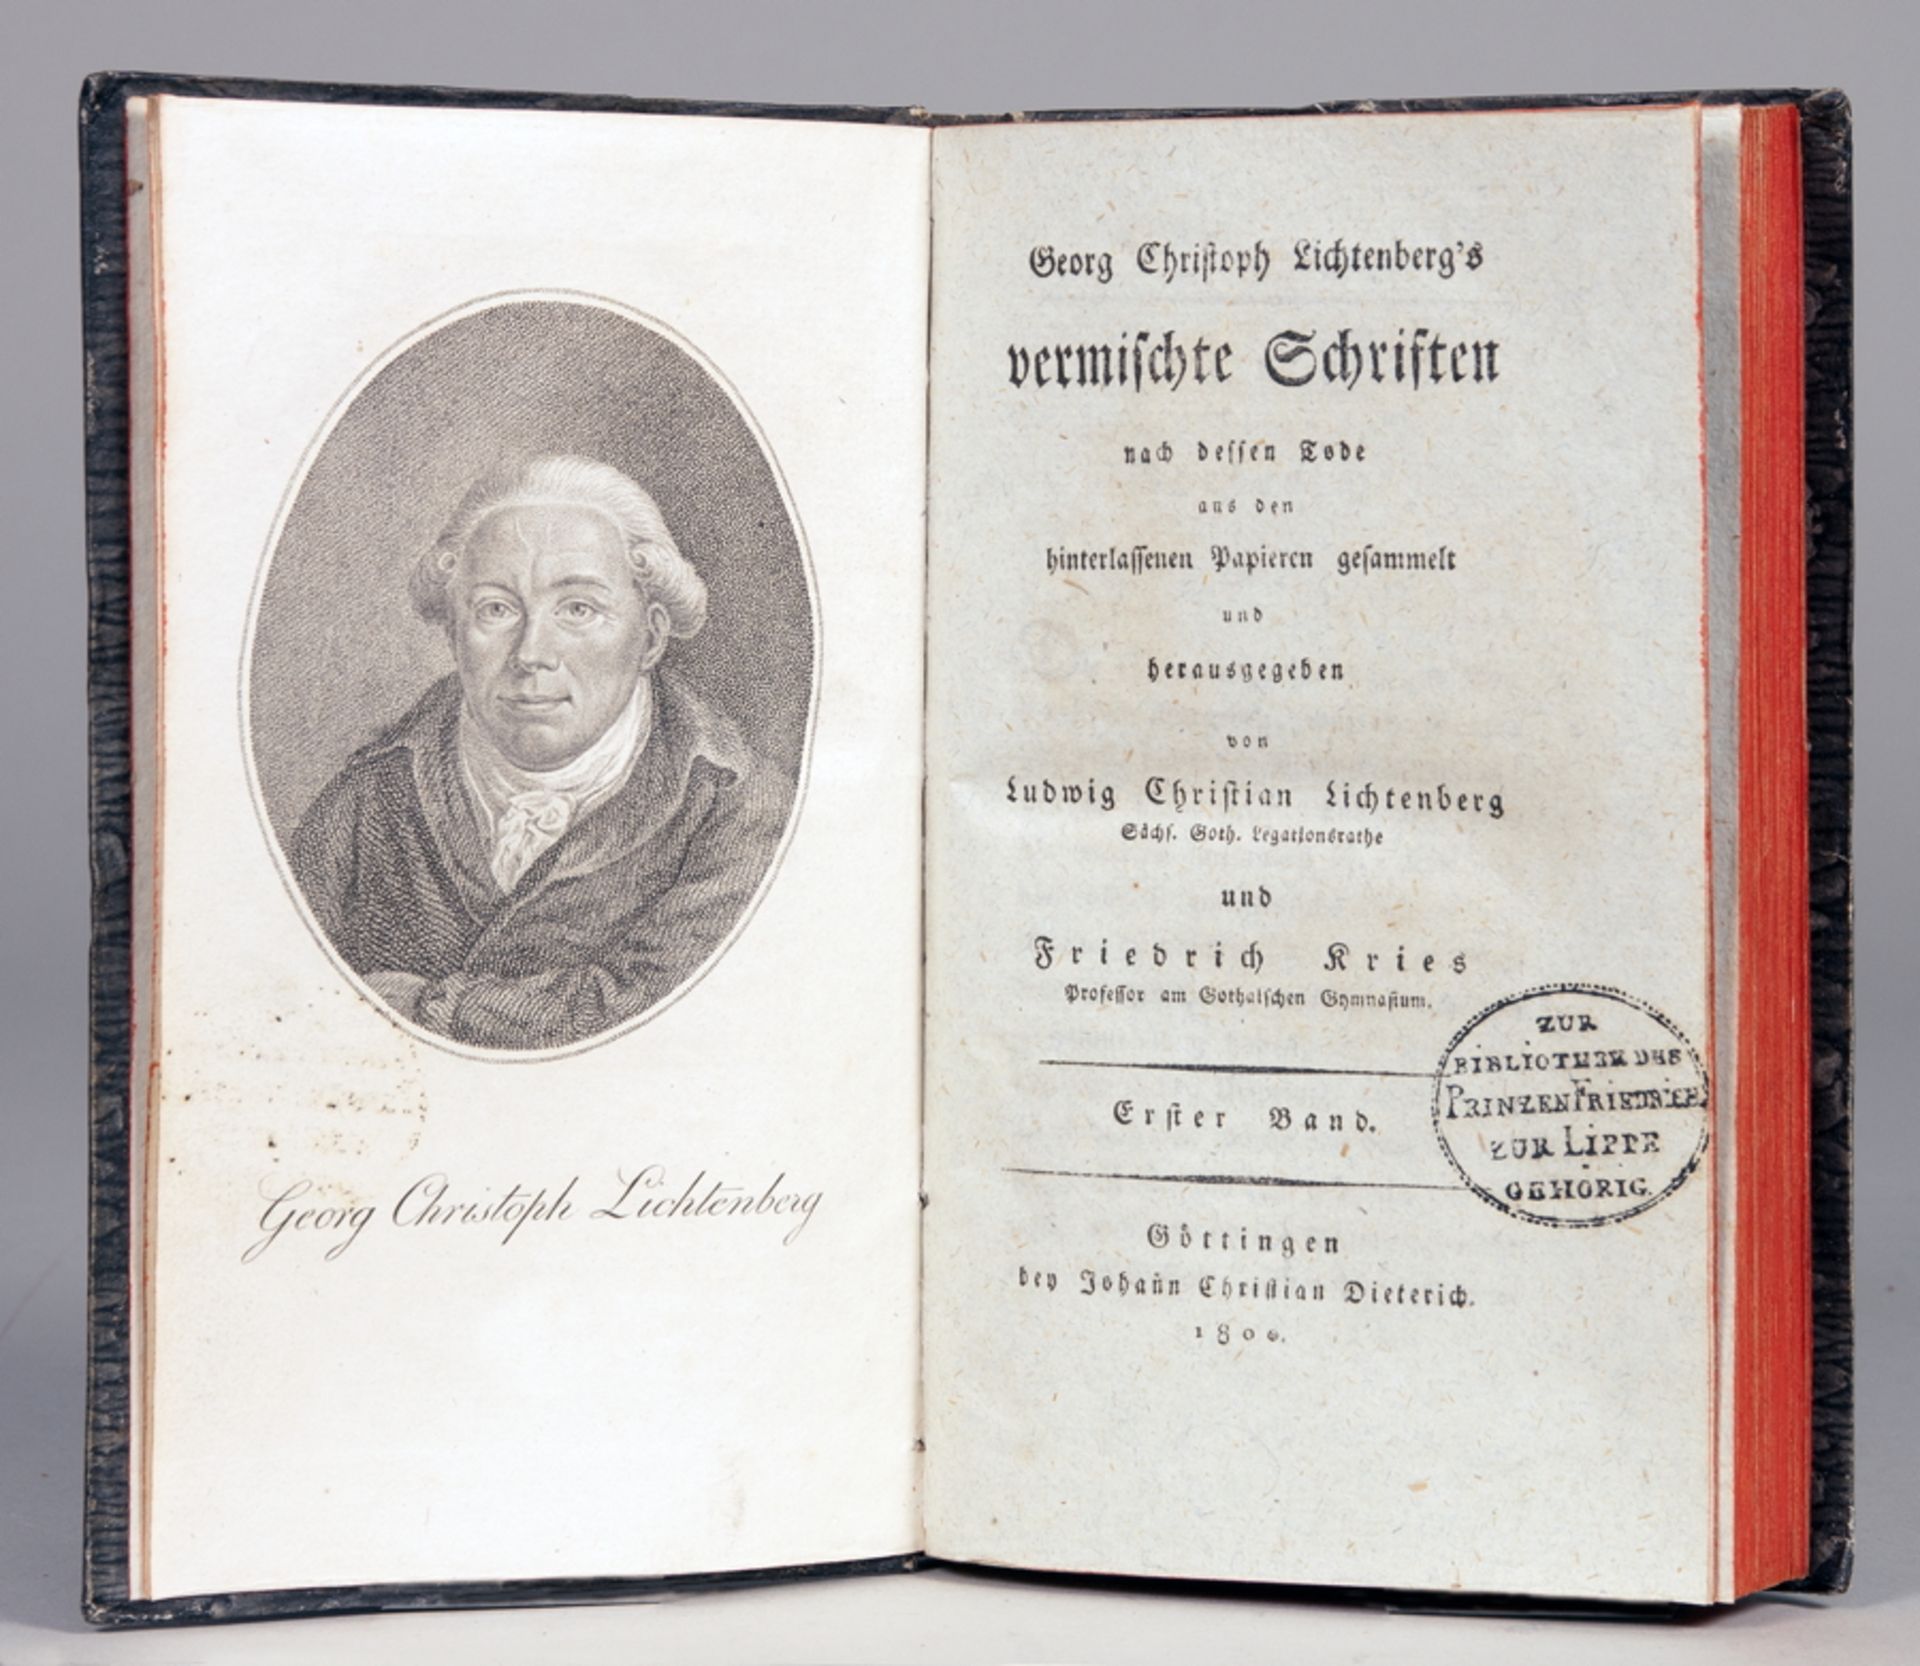 Georg Christoph Lichtenberg. Vermischte Schriften. Nach dessen Tode aus den hinterlassenen